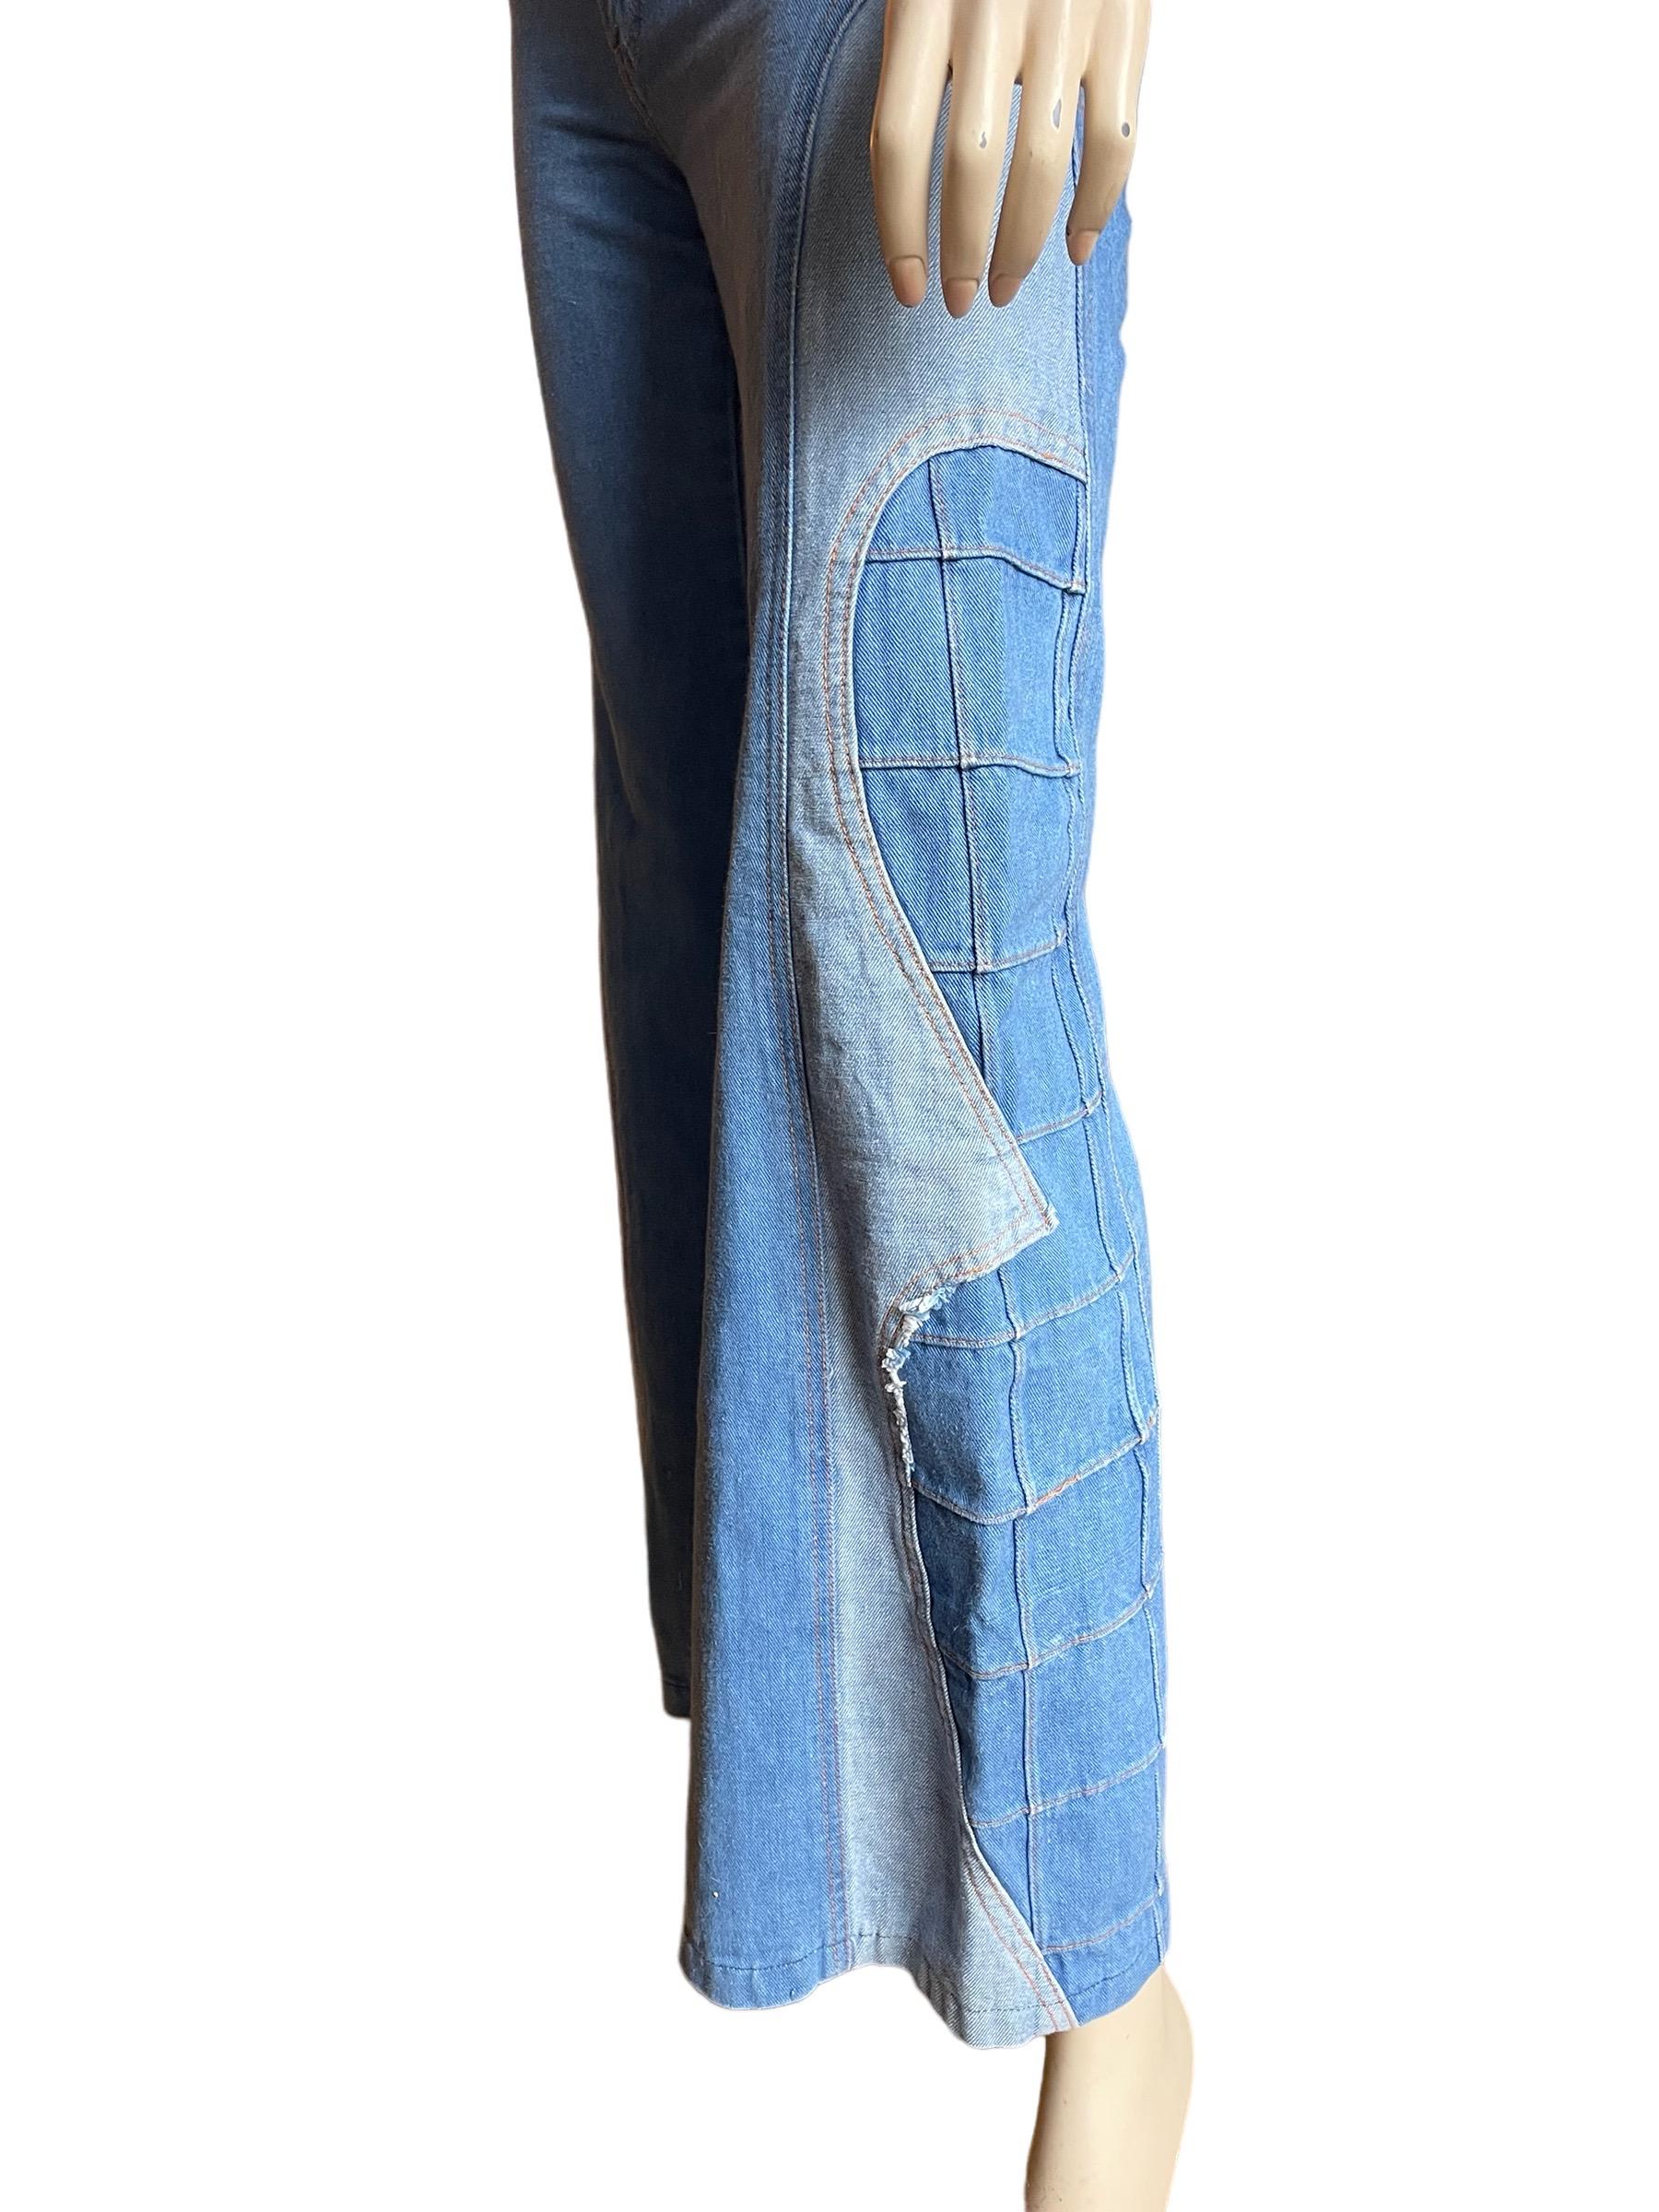 1970er Brittania Denim Jeans mit Glockenunterteil 

Supercoole 1970er-Jahre-Jeans mit Glockenboden und einzigartigem Patchwork. Diese Jeans ist ein echtes Unikat, eine Jeans im Stil der 70er Jahre. 

Kleiner Bleichfleck auf der Rückseite, wie auf